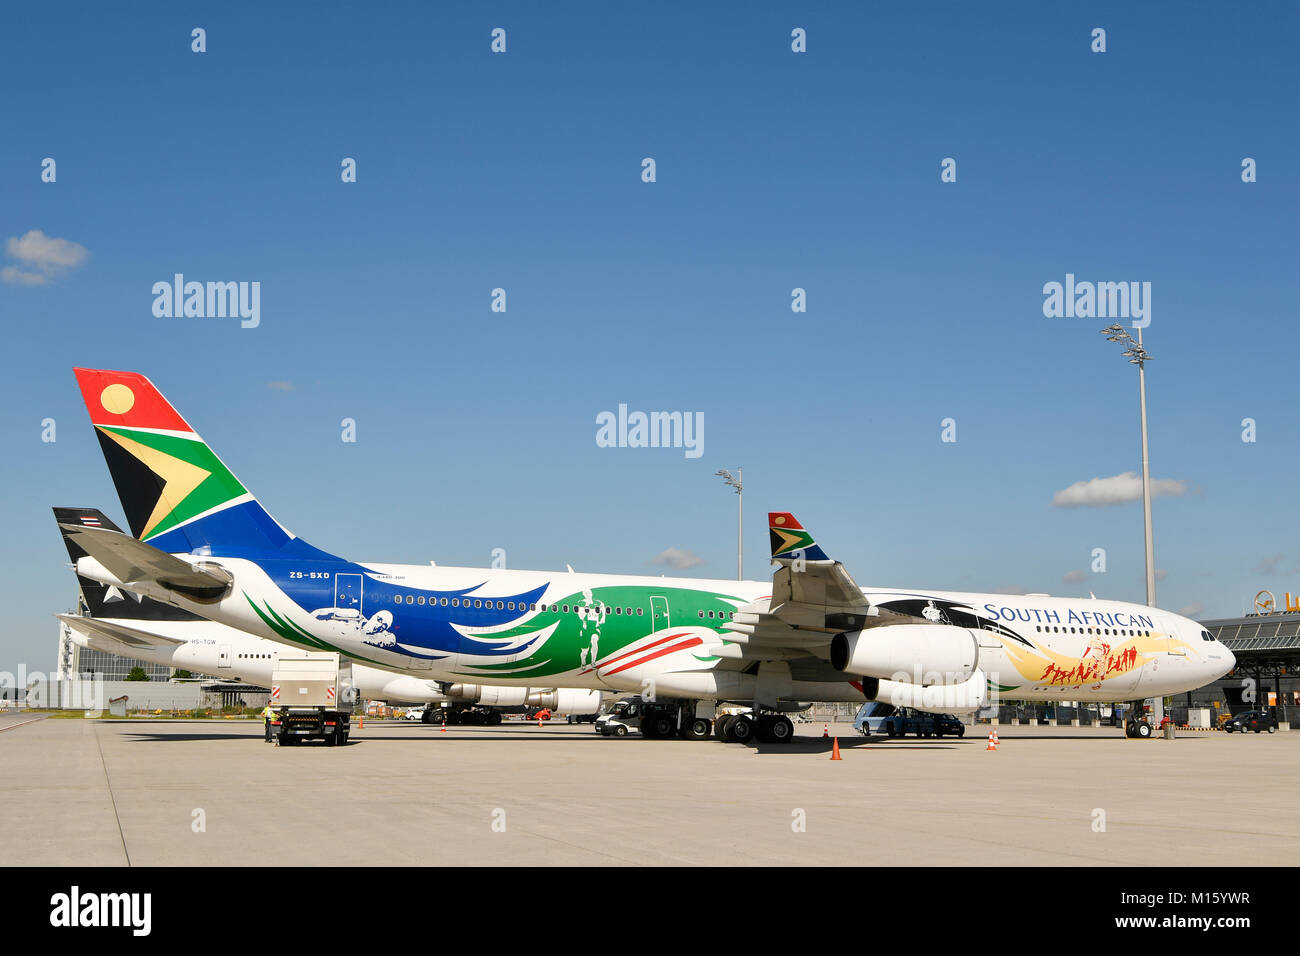 South African Airlines,SAA,fútbol,edición especial del aeropuerto de Munich, Alemania Foto de stock